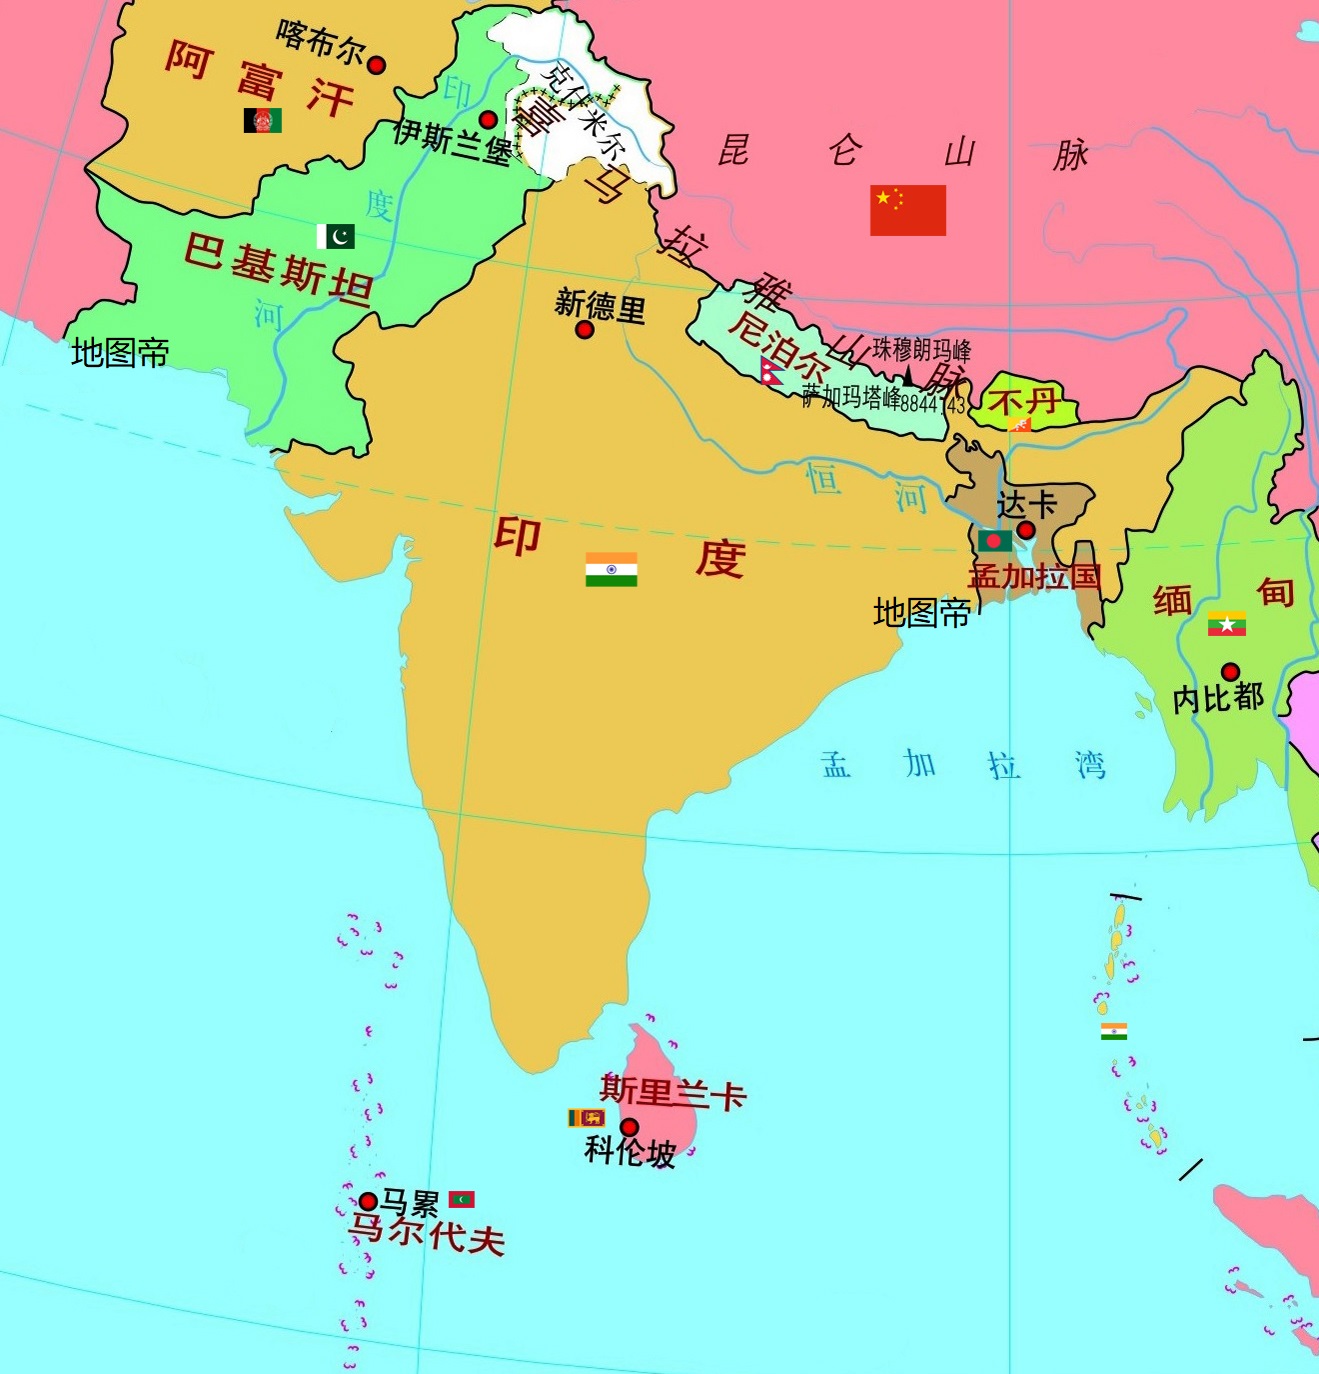 24亿,南亚次最大. 东南方向,有一个岛国,名为斯里兰卡.